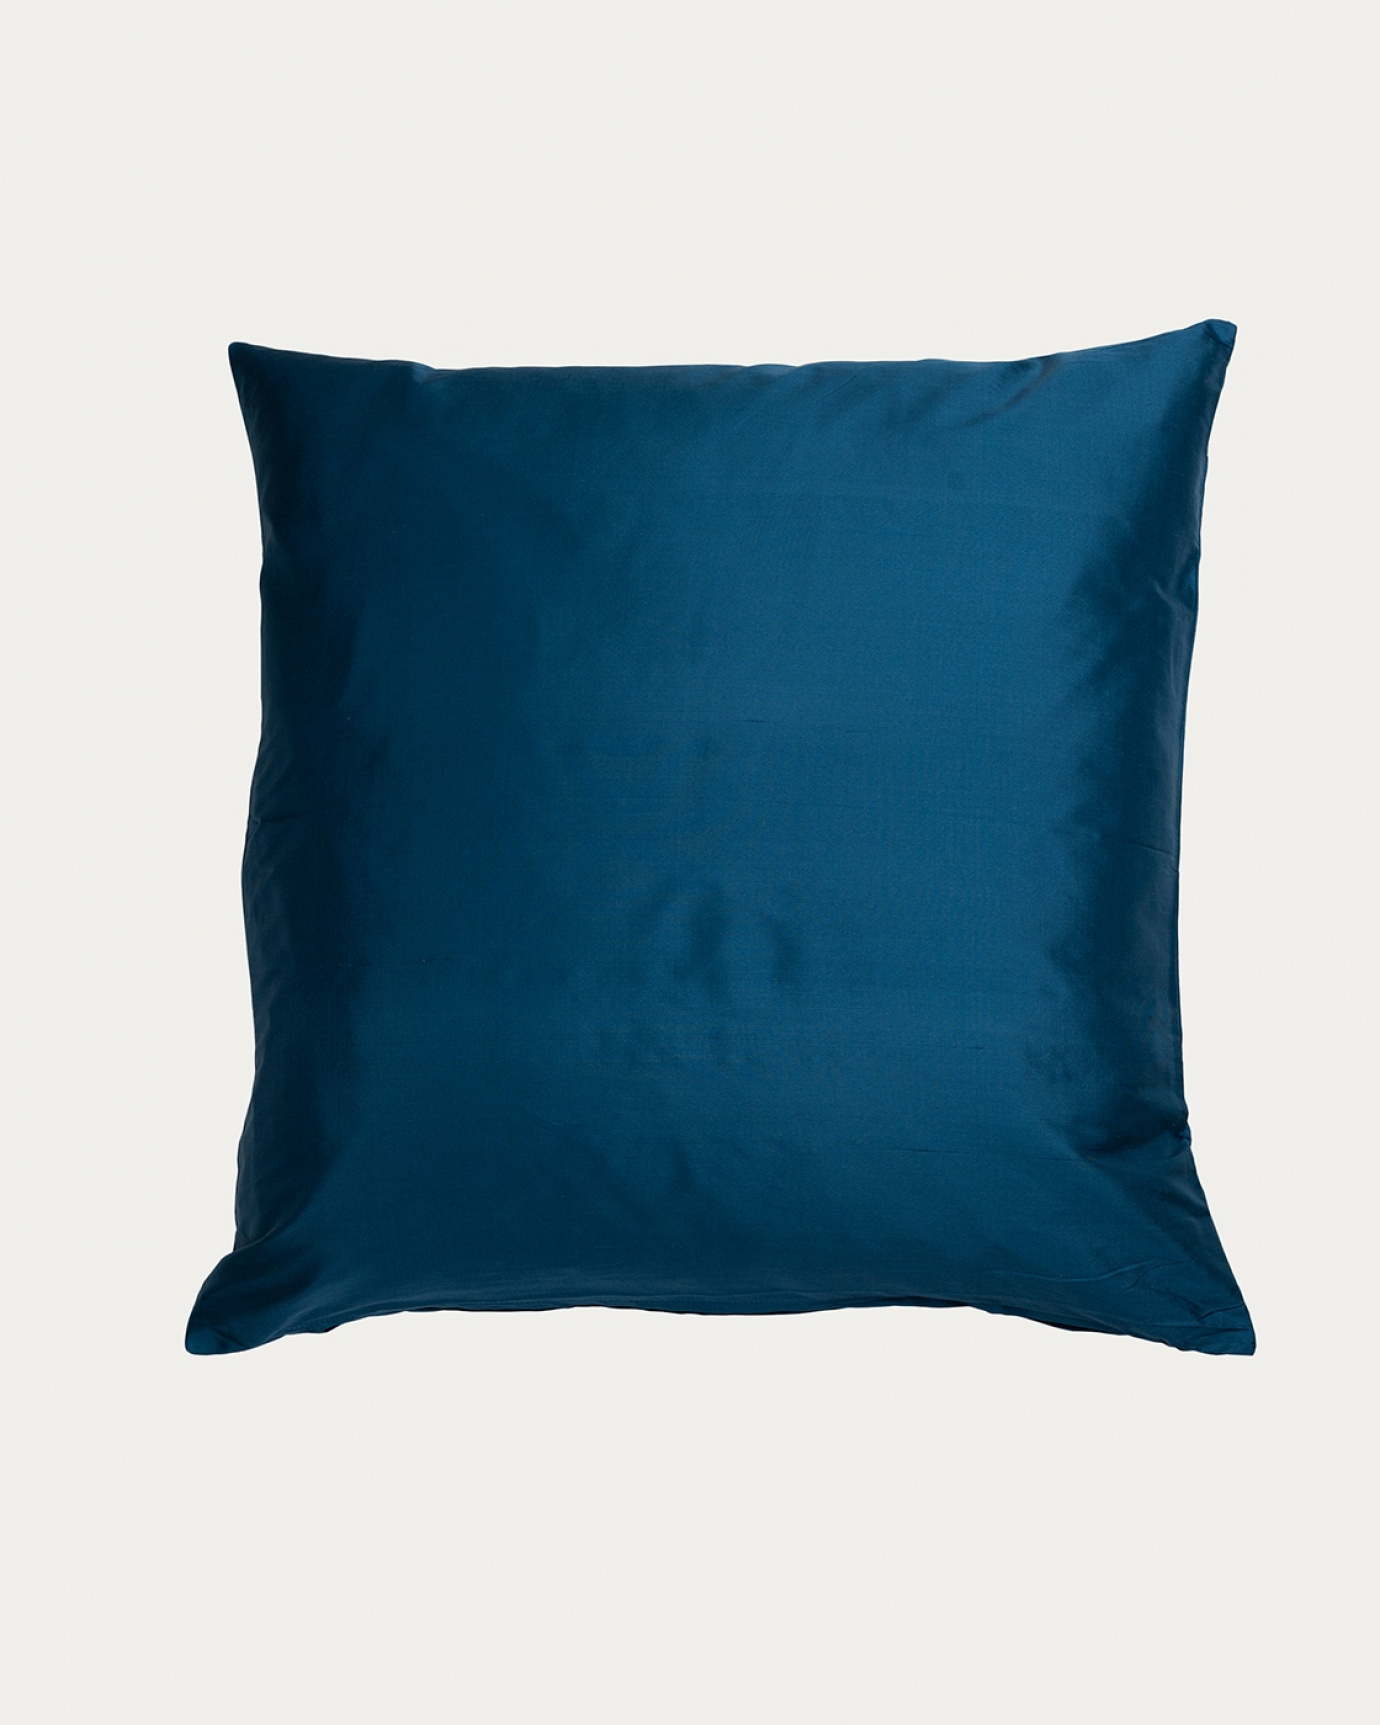 Produktbild tiefseeblau SILK Kissenhülle aus 100% Dupionseide, die einen schönen Glanz verleiht von LINUM DESIGN. Größe 50x50 cm.